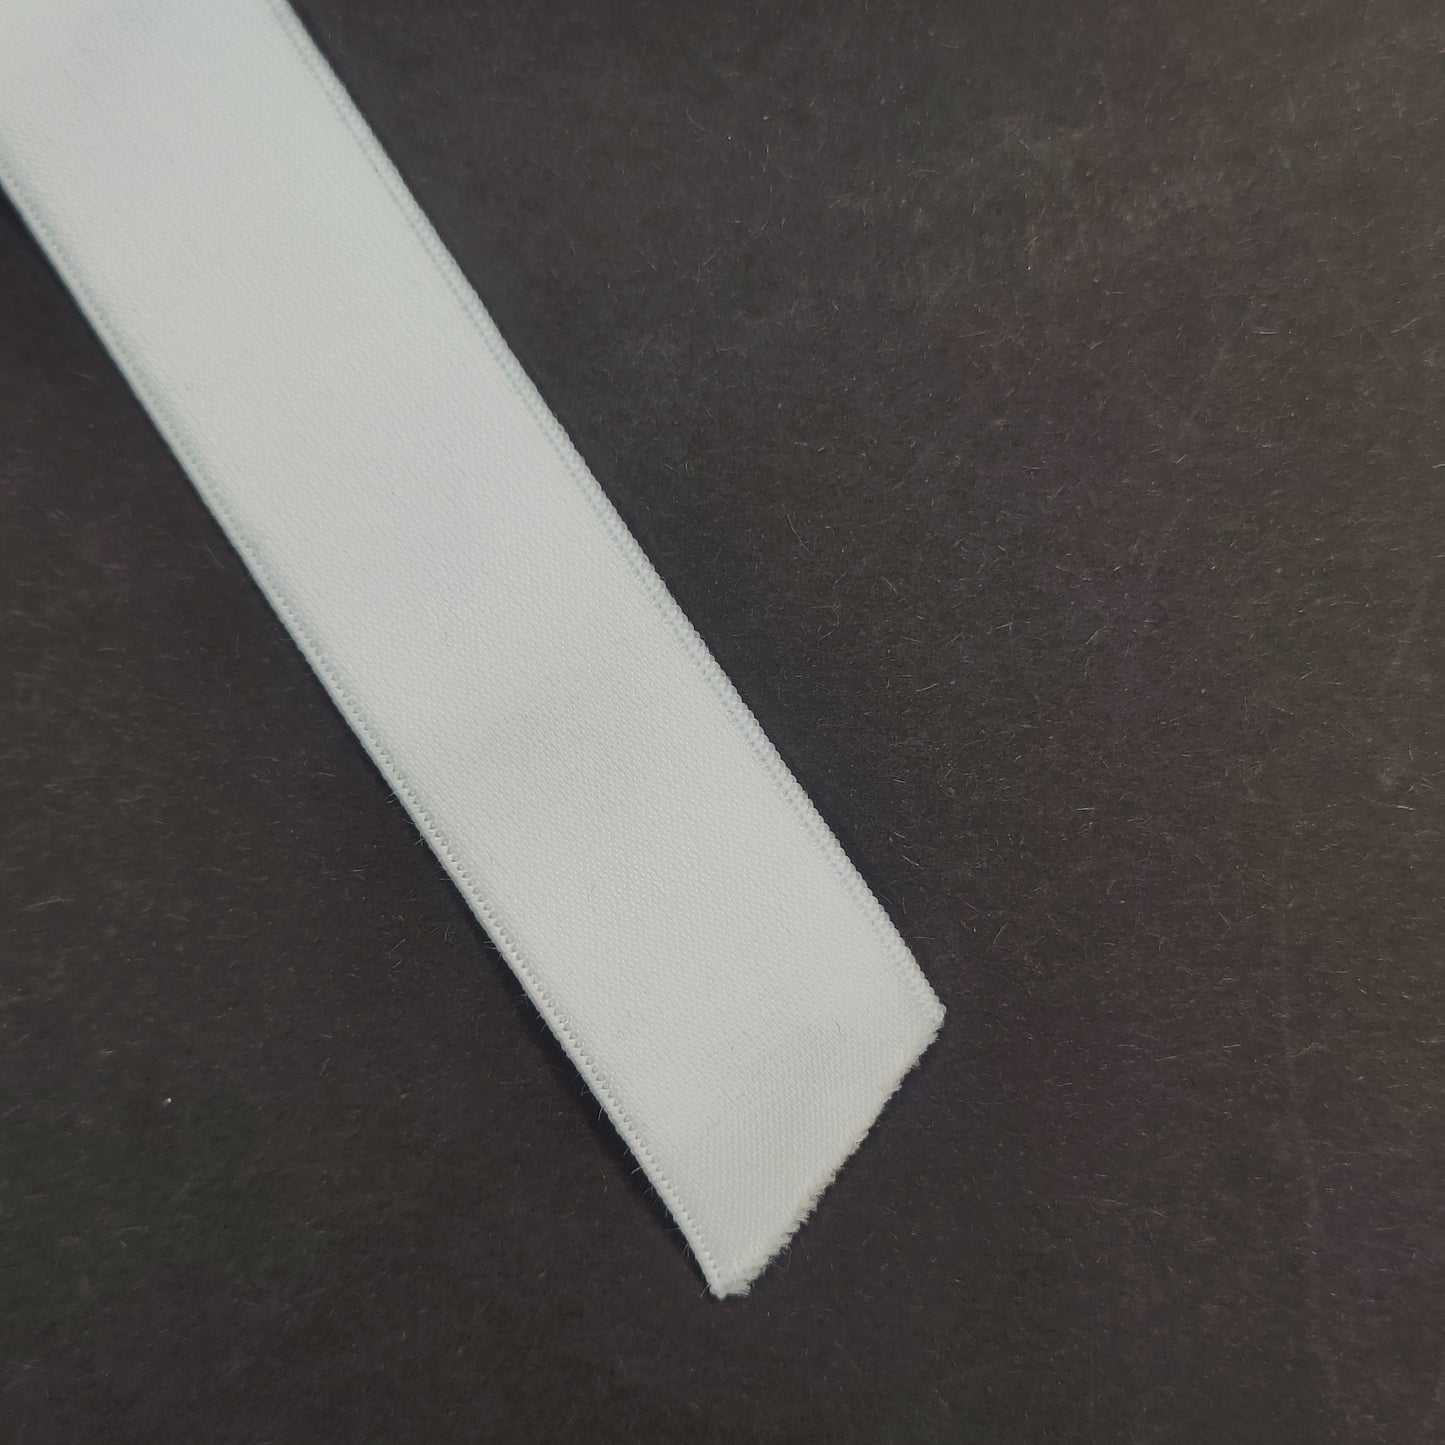 24mm BH-Trägerband, Trägergummi, Schulterband, strap elastic weiß/ white IDtrx20